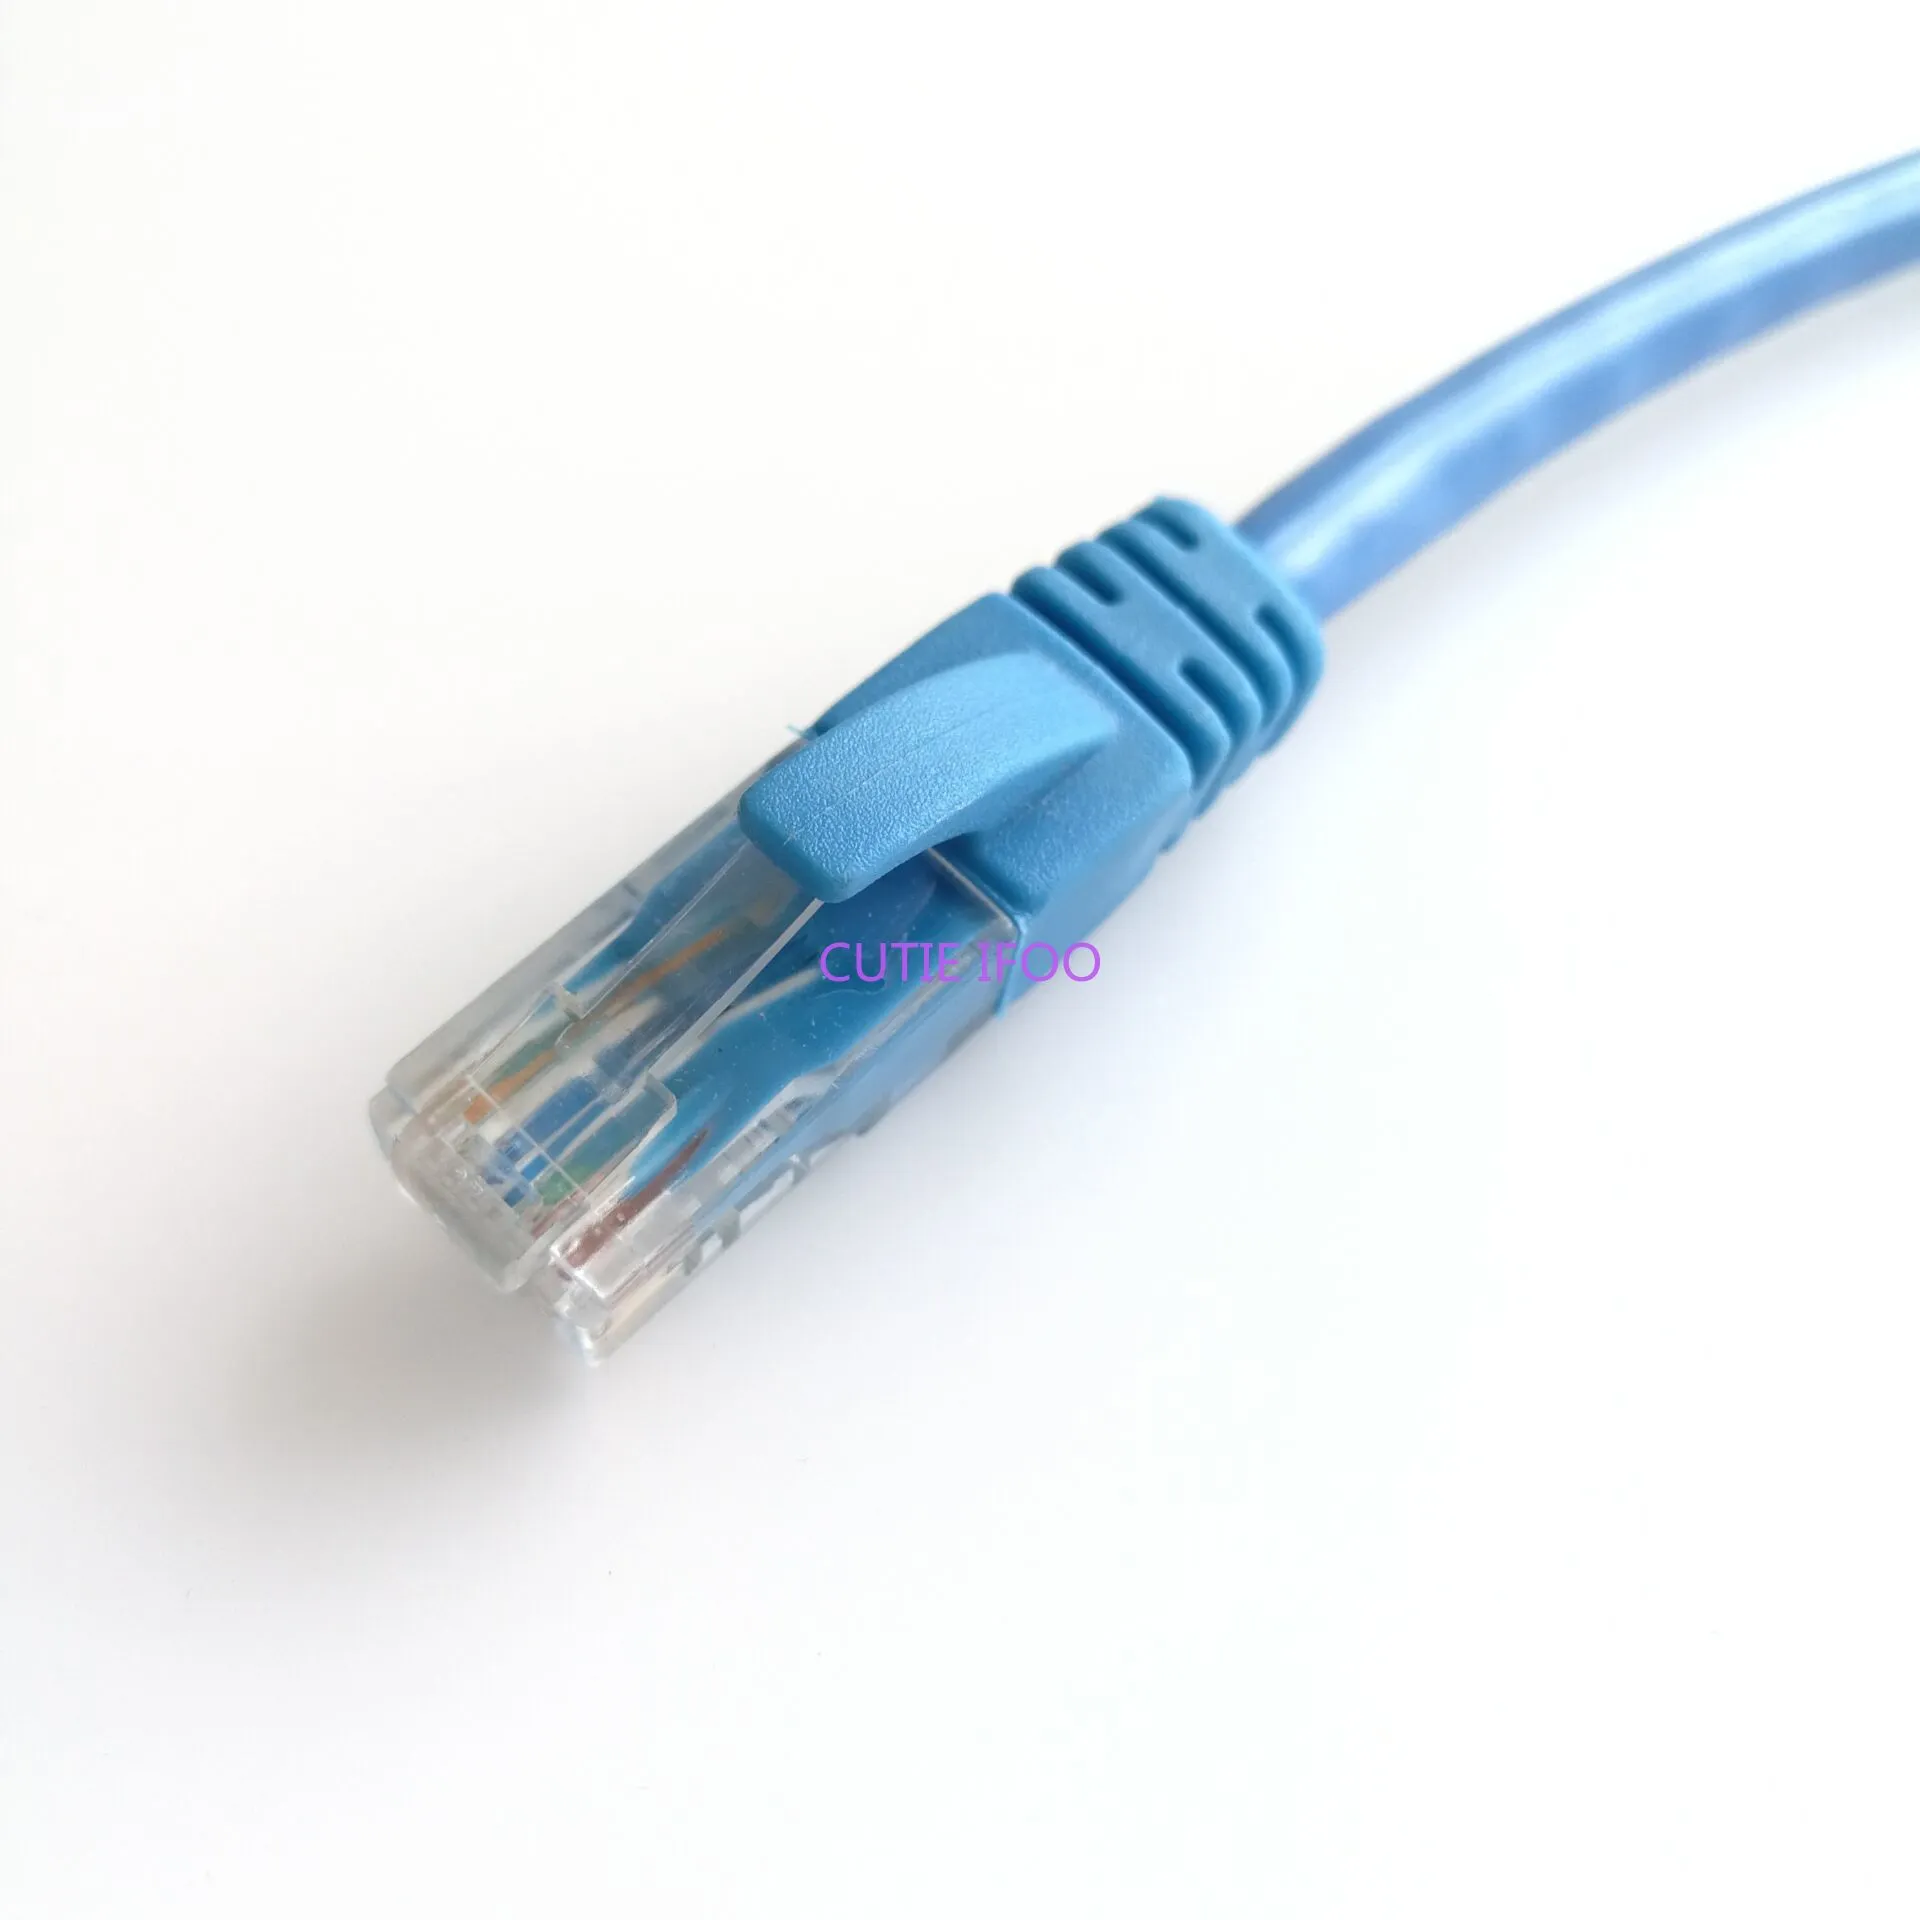 CAT6 1Gbps 1000Mbps高速イーサネットネットワークインターネットLANケーブルRJ-45 RJ45男性から男性からコンピュータラップトップスイッチハブルーター